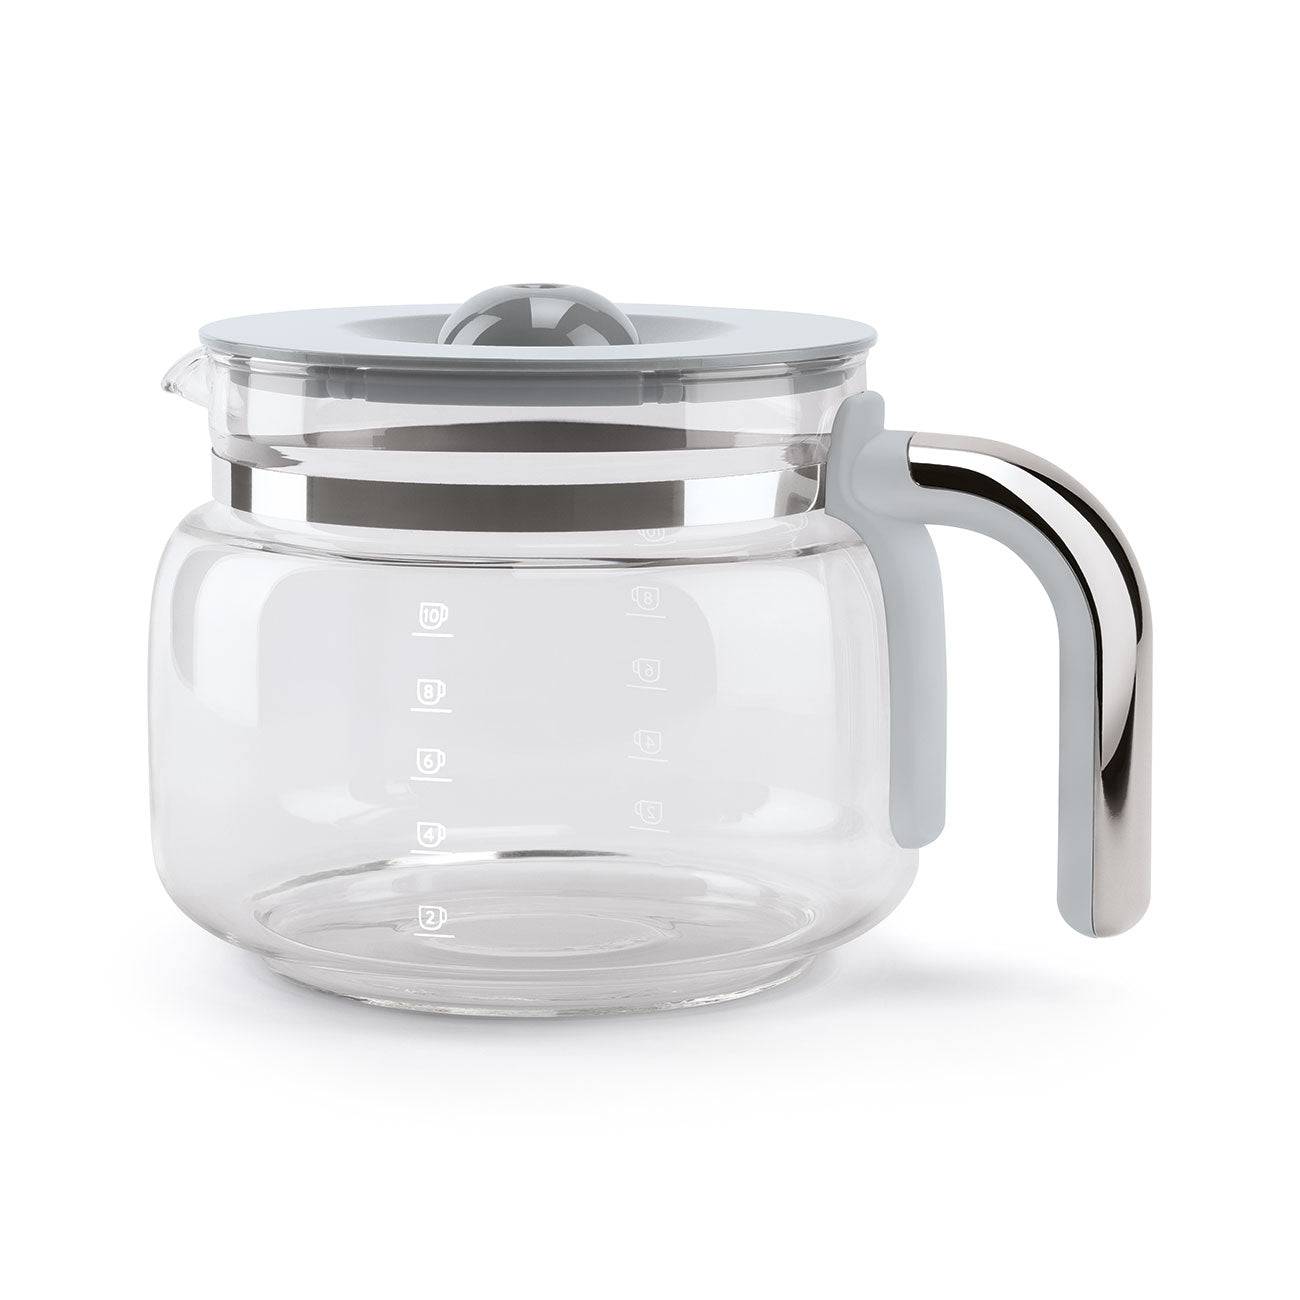 Smeg 50's Retro Style Drip-filter Coffee Machine, White - Kitchen Universe